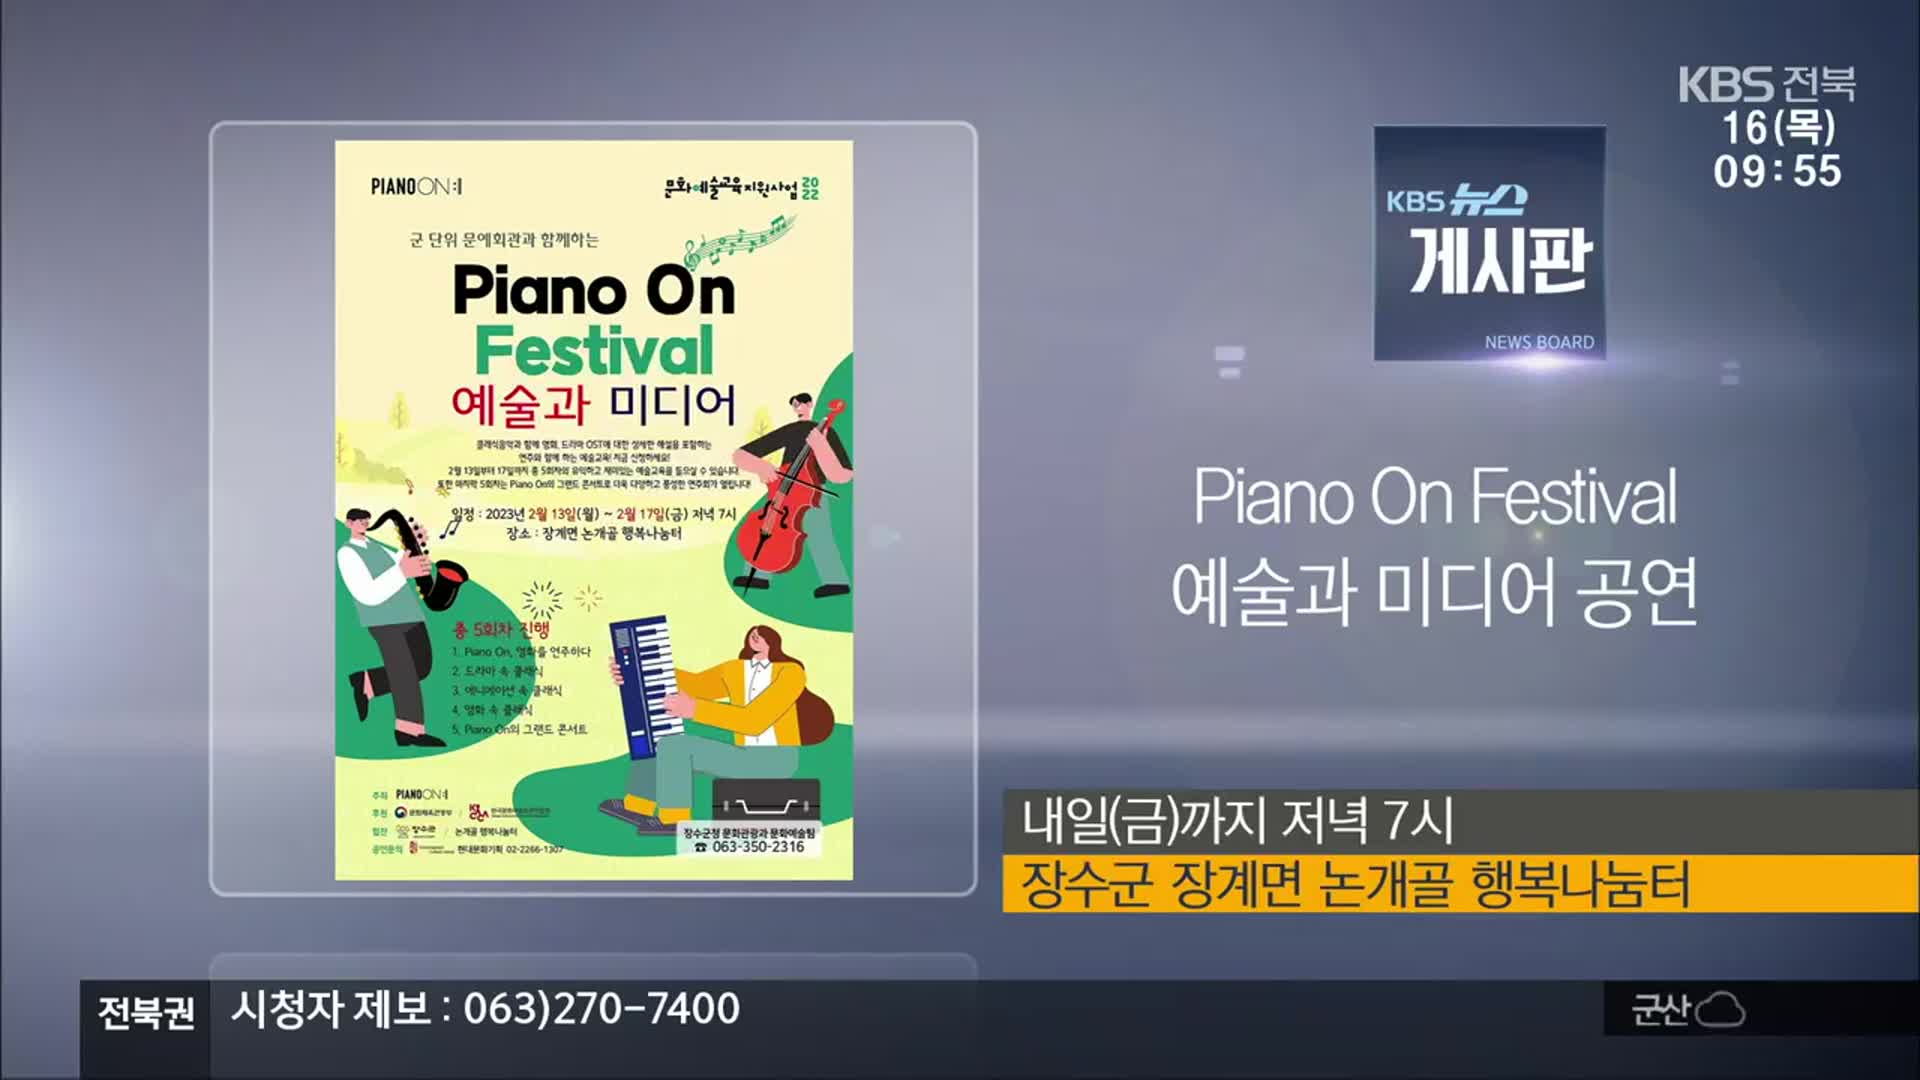 [게시판] Piano On Festival 예술과 미디어 공연 외